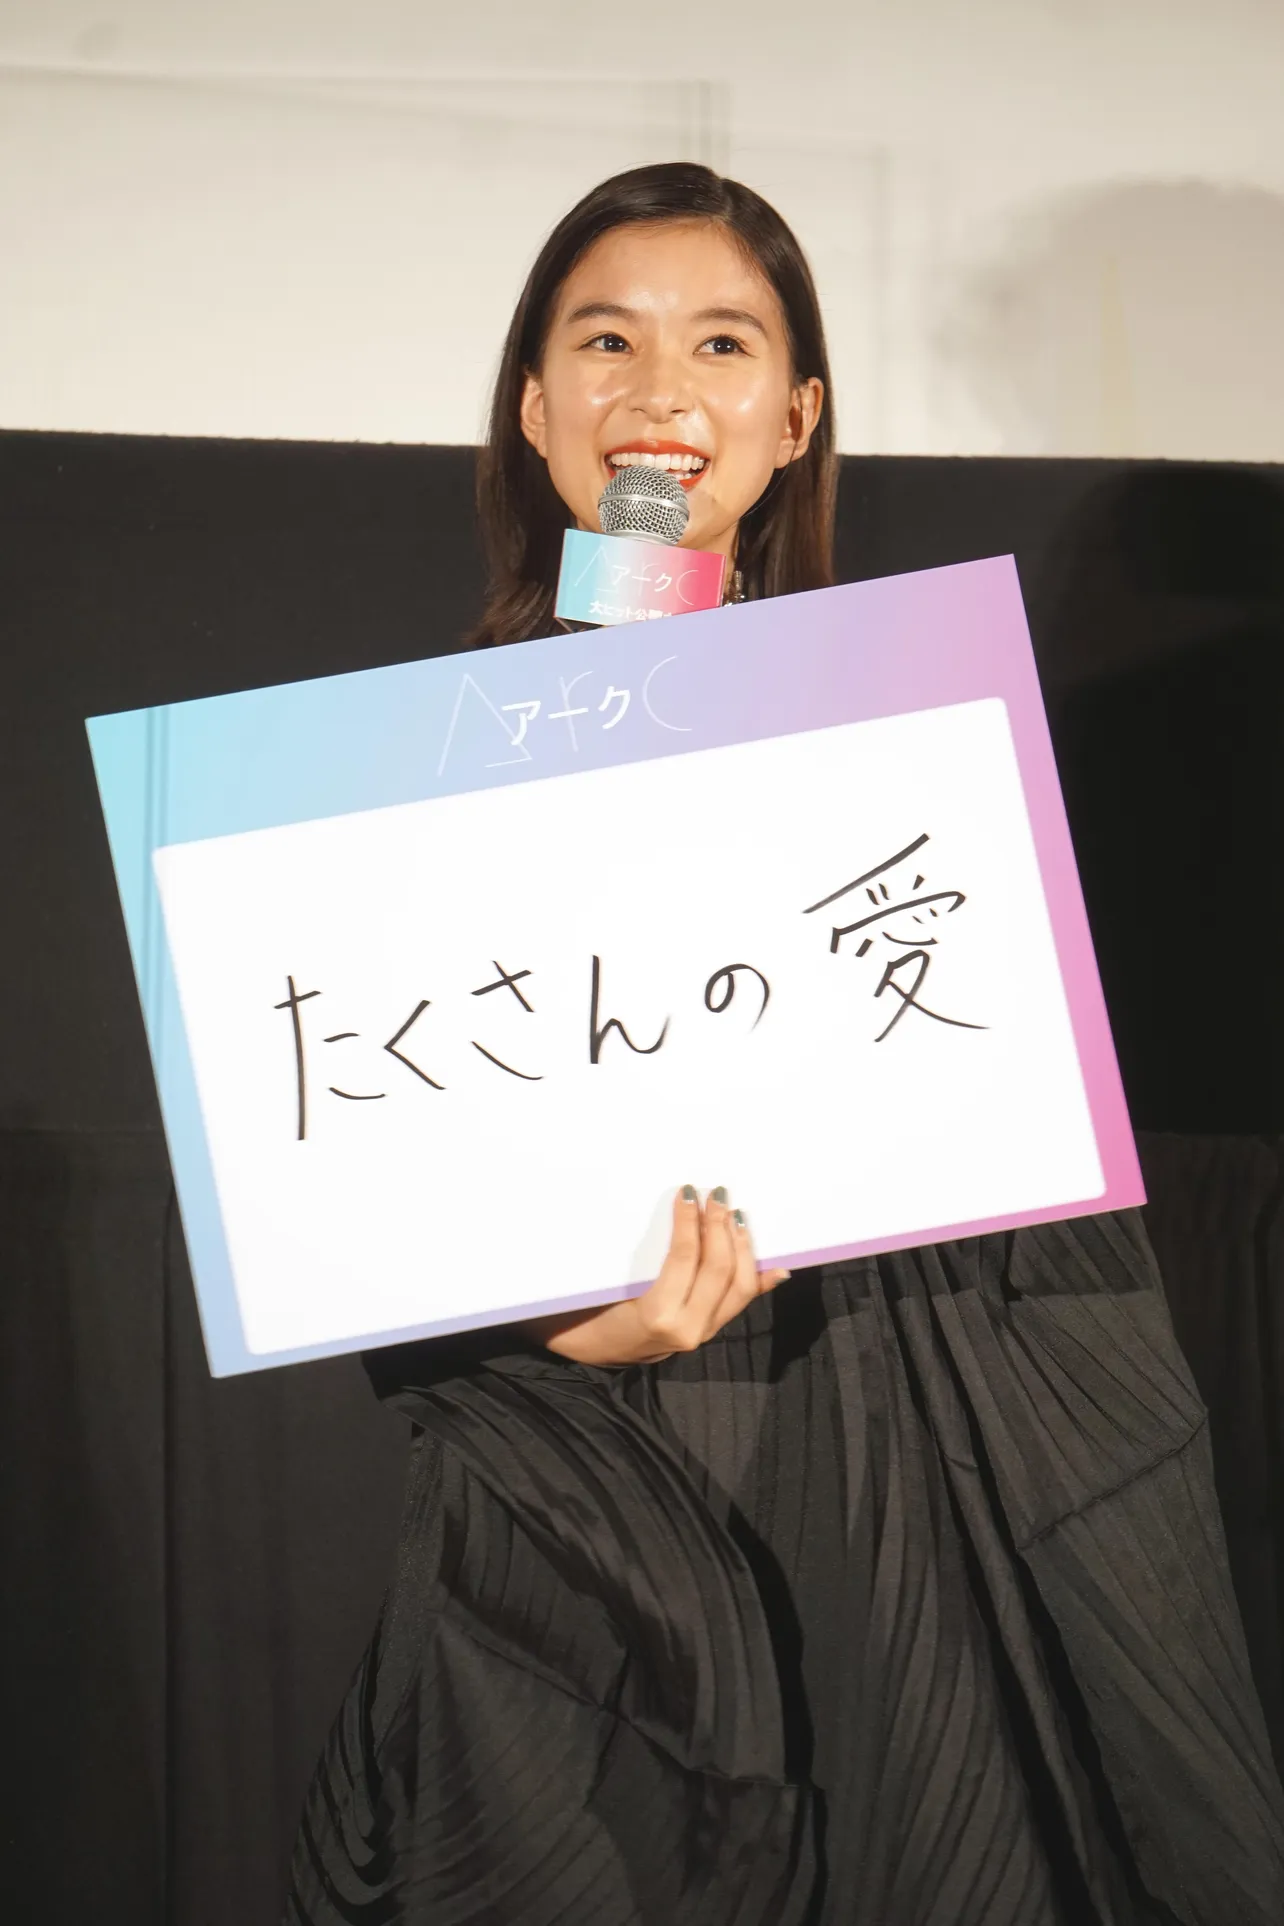 注目してほしいポイントとして「たくさんの愛」と発表した芳根京子